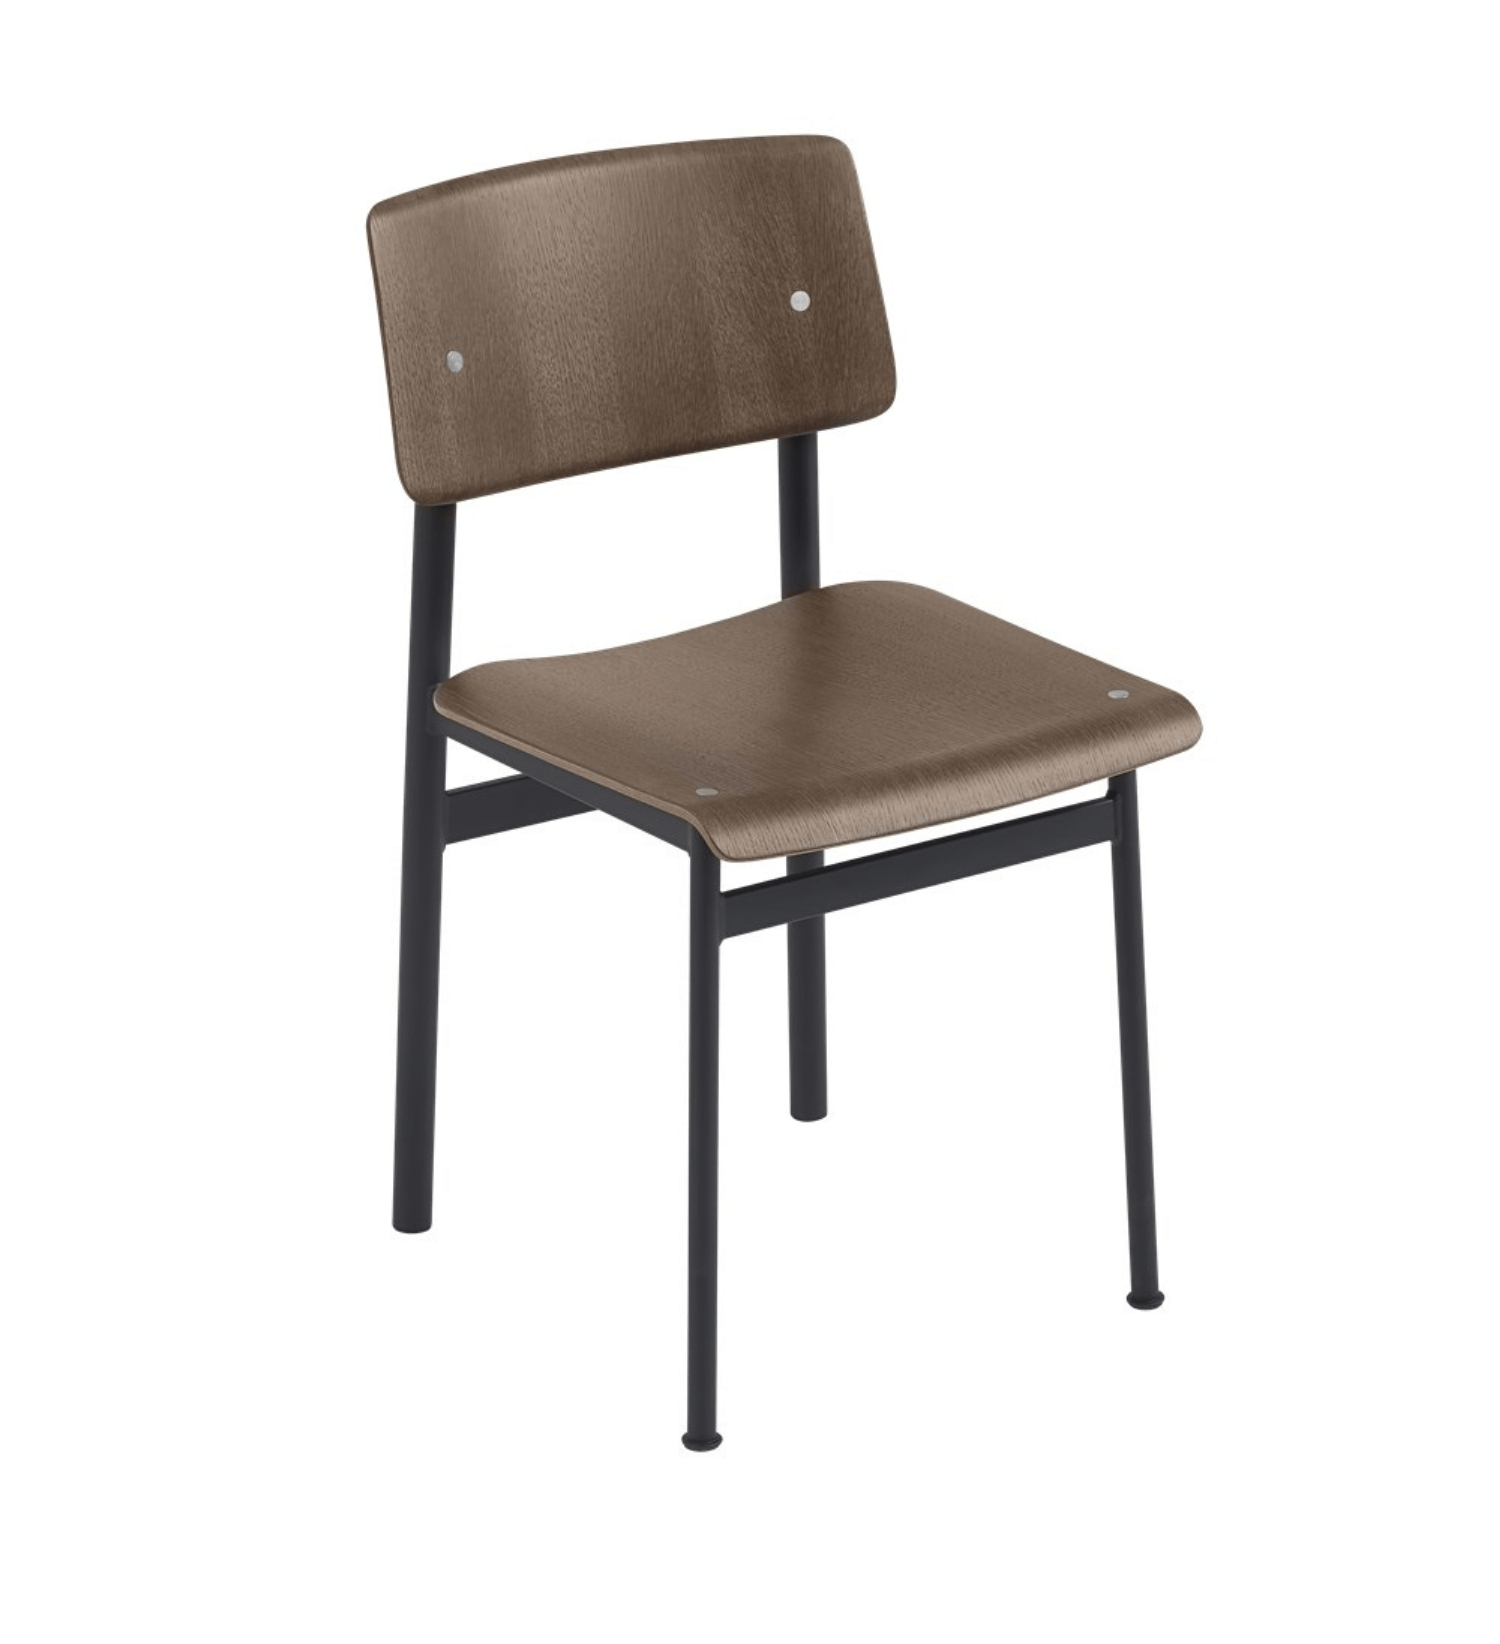 Krzesło Loft Chair od Muuto bez podłokietników.